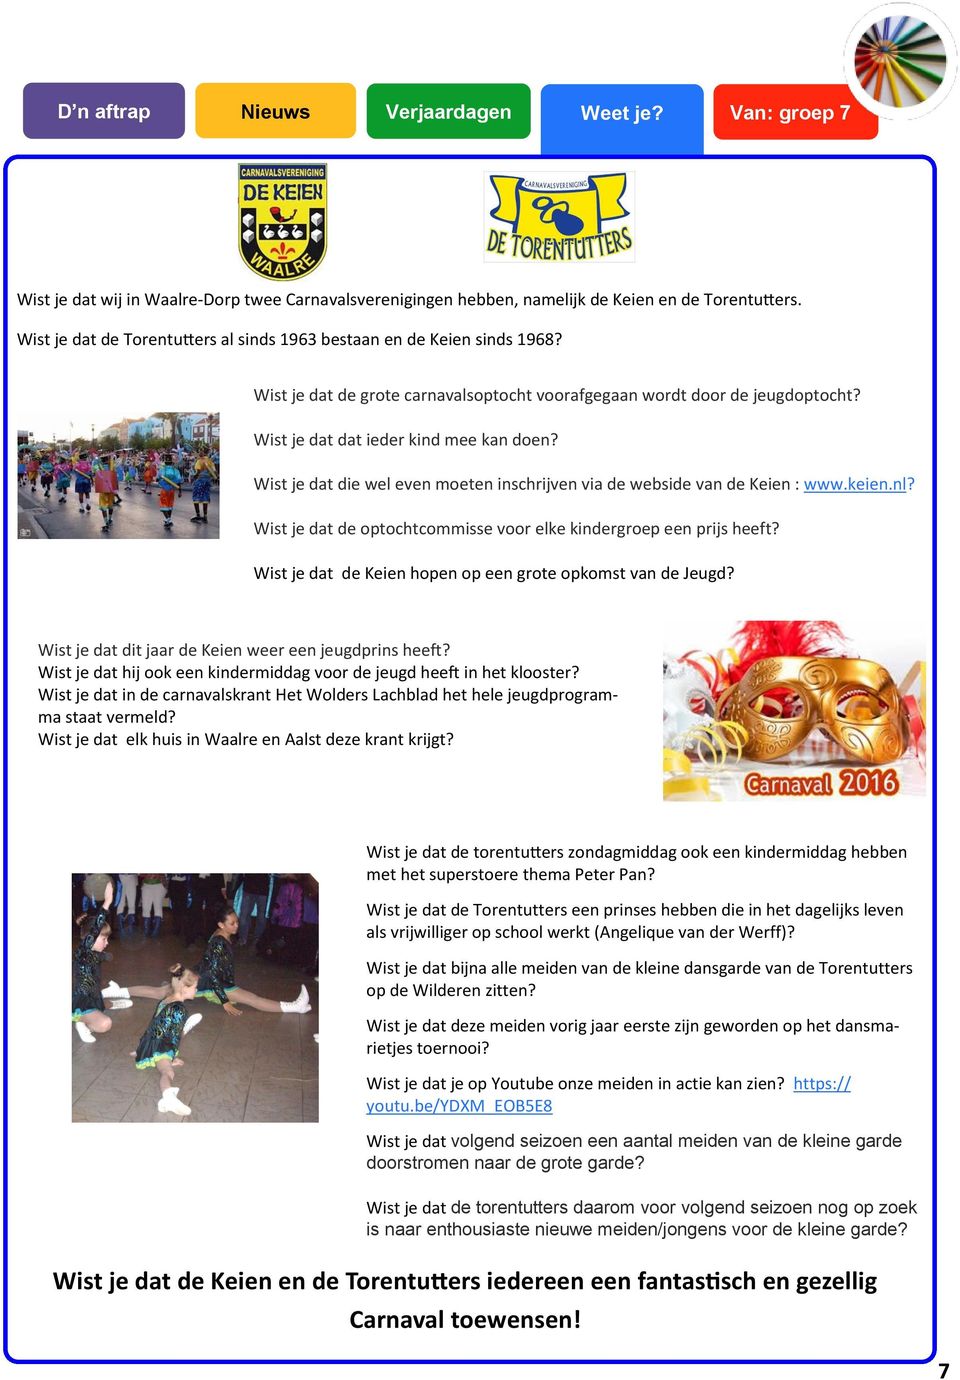 Wist je dat die wel even moeten inschrijven via de webside van de Keien : www.keien.nl? Wist je dat de optochtcommisse voor elke kindergroep een prijs heeft?